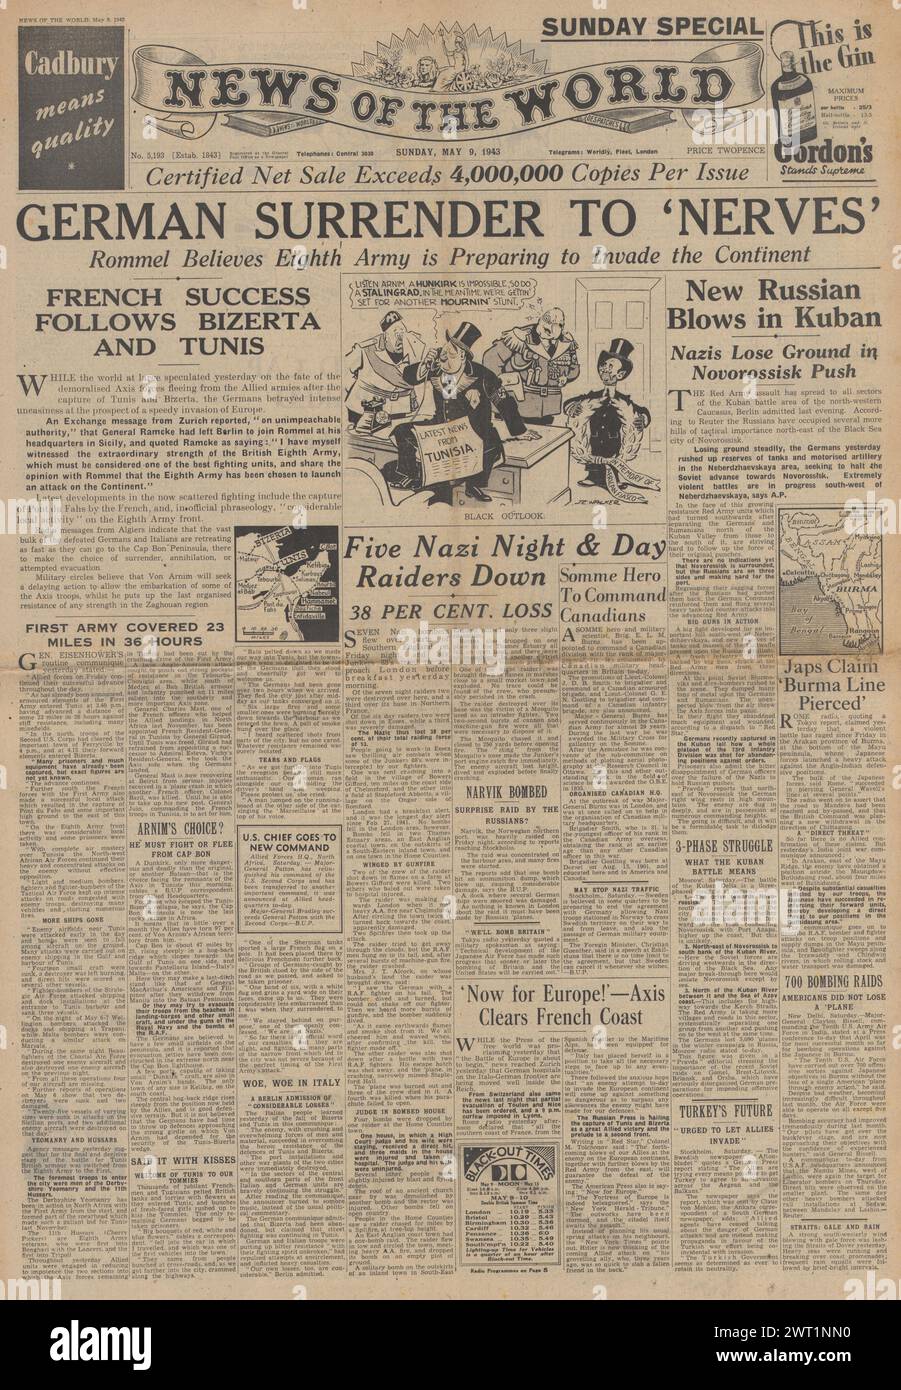 1943 nouvelles de la page d'accueil mondiale faisant état de la reddition des forces de l'axe en Afrique du Nord Banque D'Images